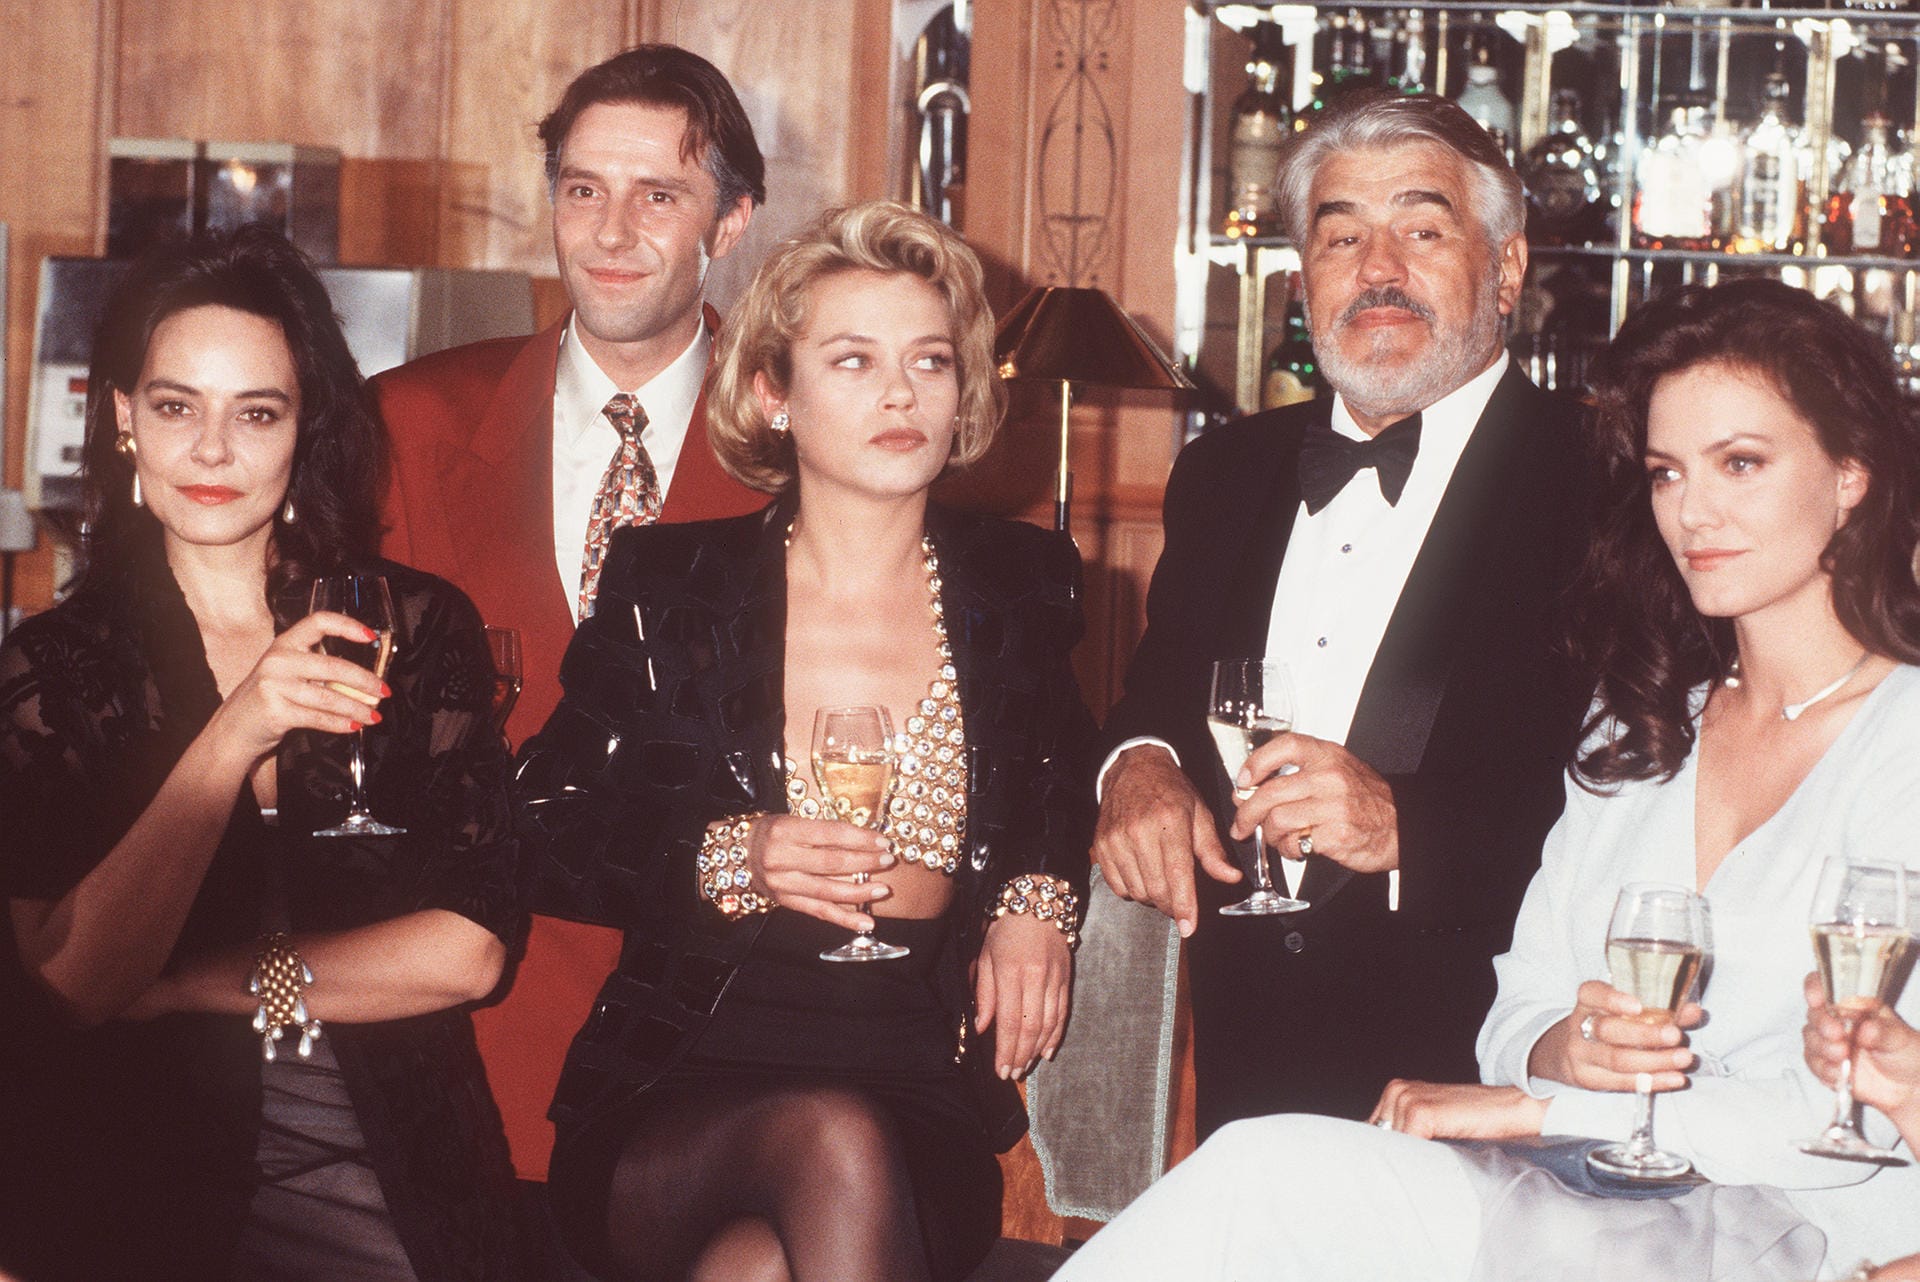 In "Der Schattenmann" spielte sie die Nachtclub-Besitzerin Michelle Berger. Neben ihr sind zu sehen: Mario Adorf, Jennifer Nitsch, Stefan Kurt und Beatrix Bilgeri (v. li. n. re.).